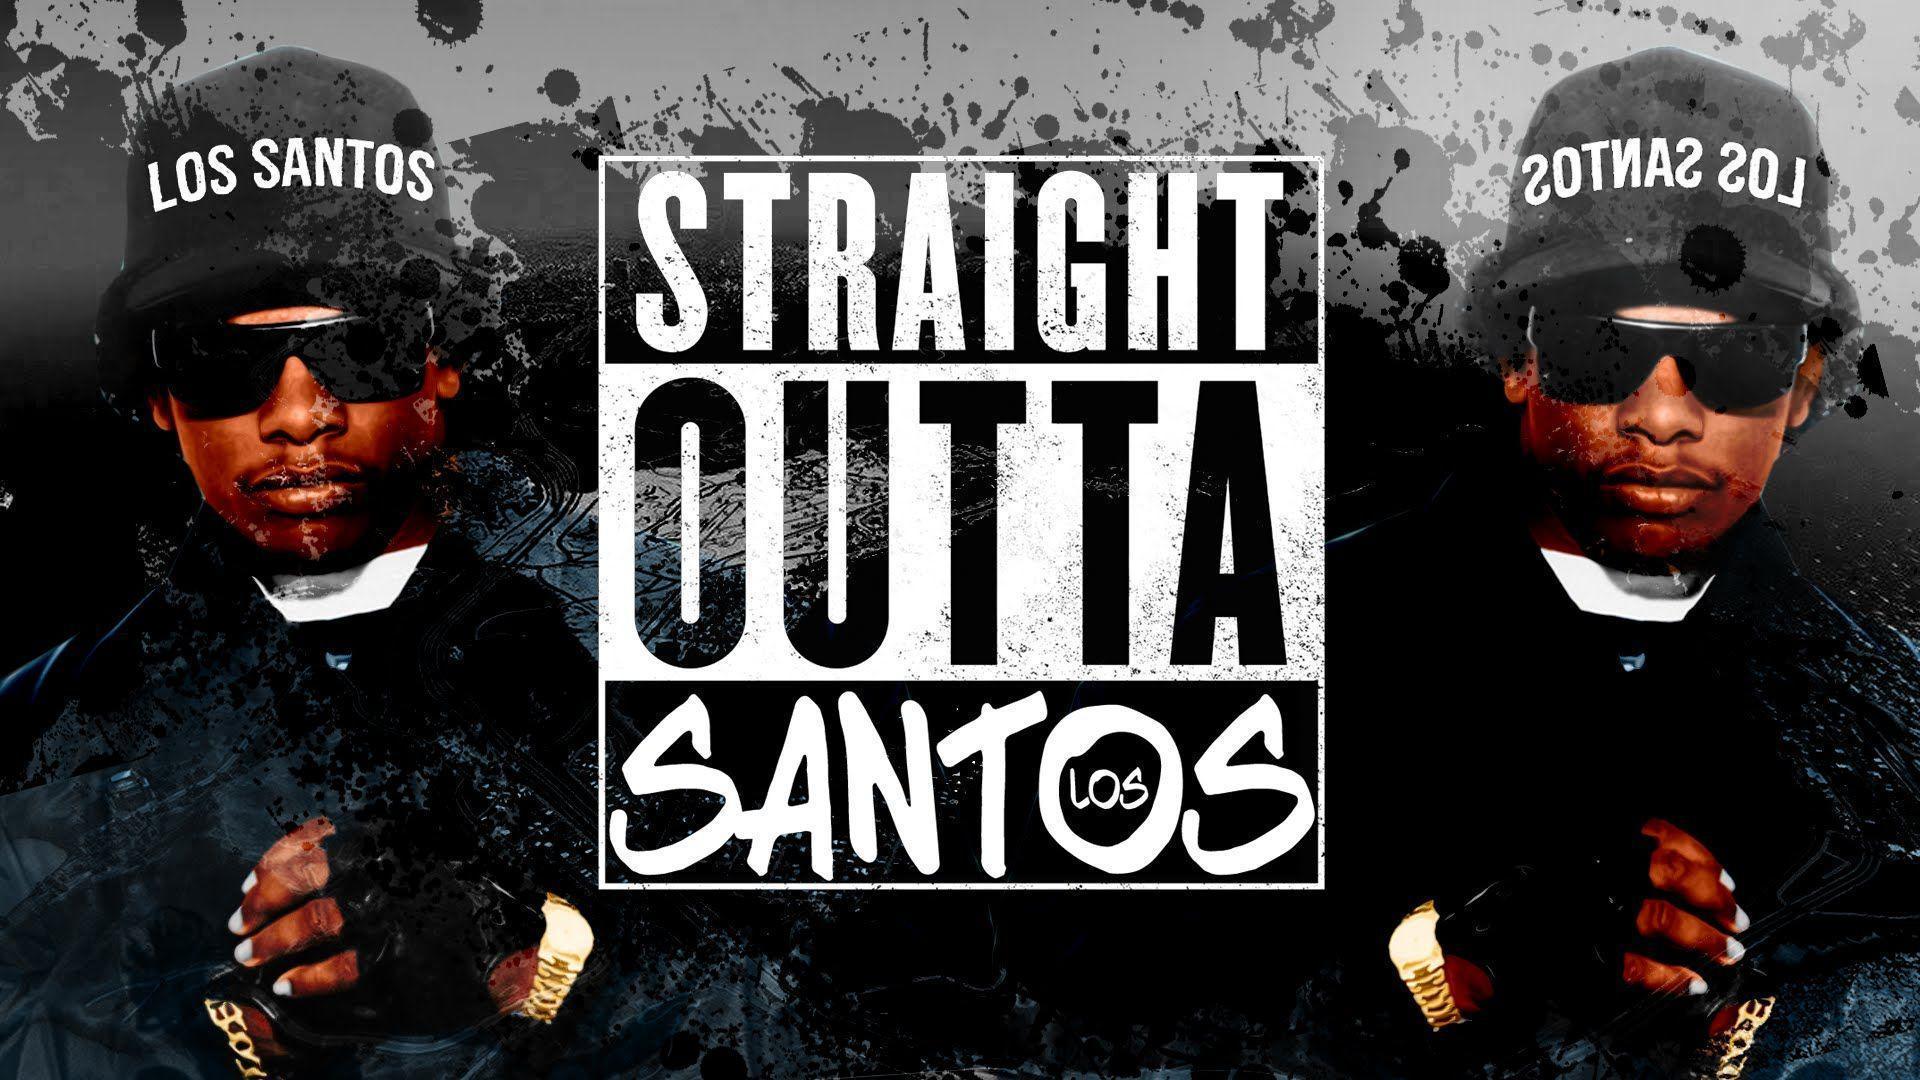 Straight outta Los Santos a GTA Movie Inspired